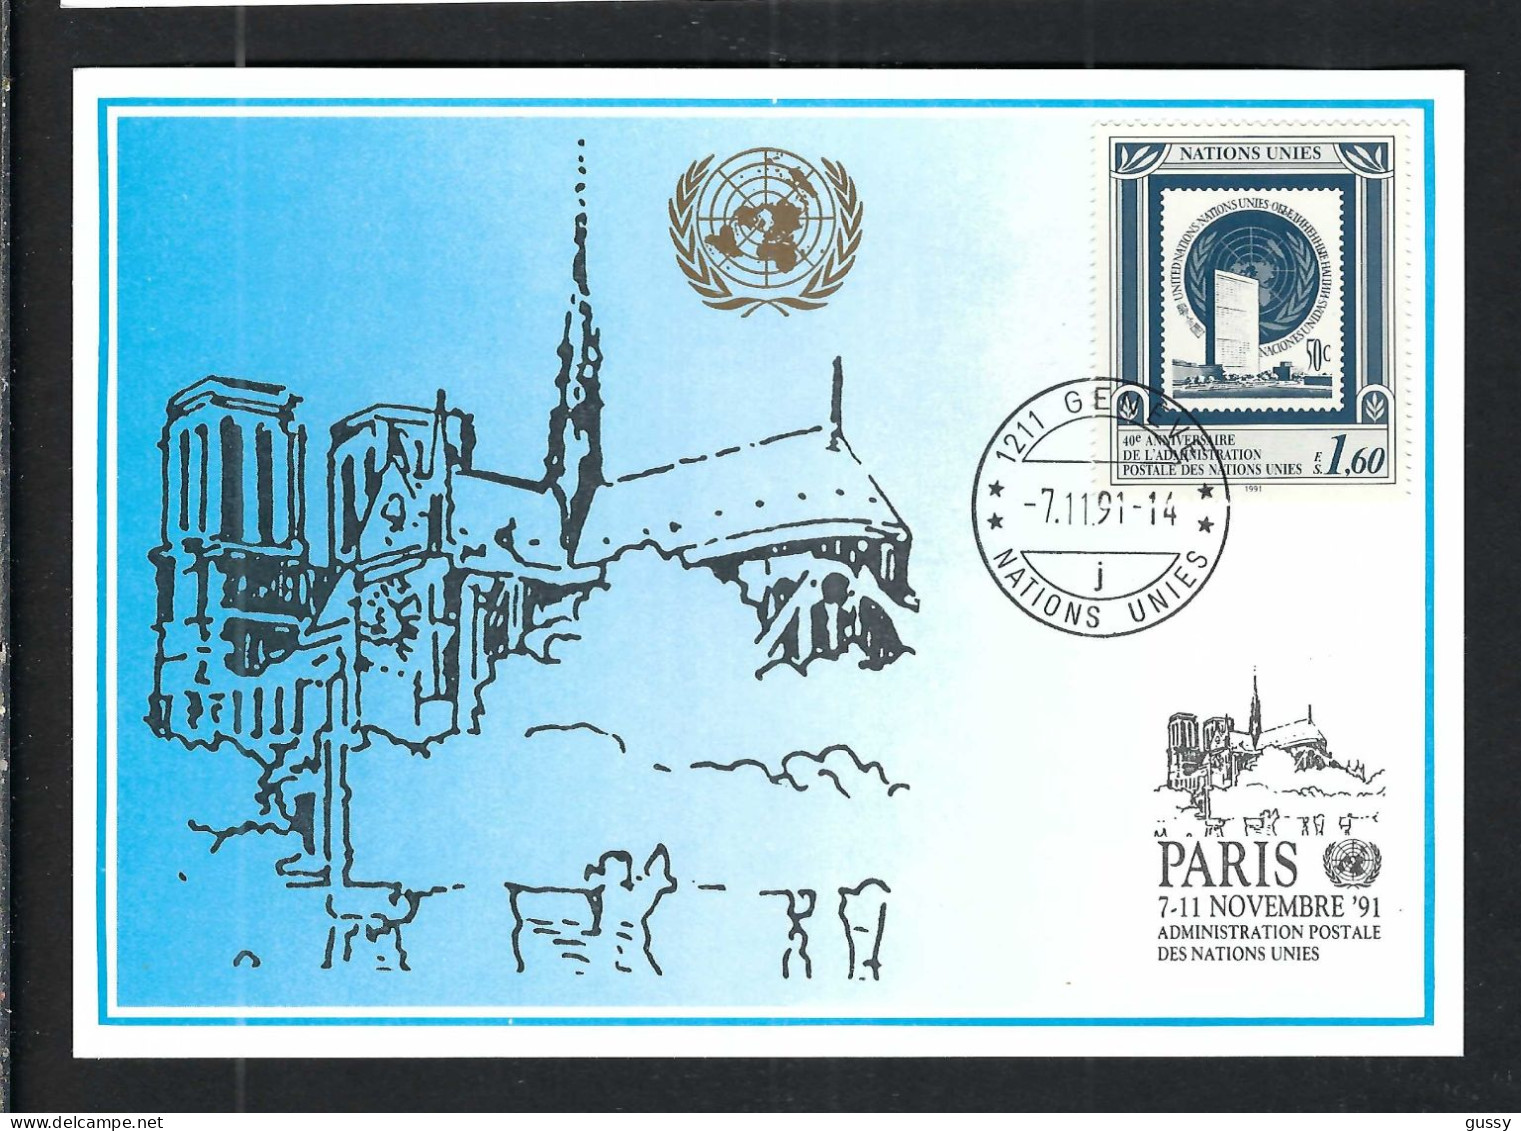 NATIONS UNIES GENEVE Ca.1991: Encart Philatélique - Covers & Documents